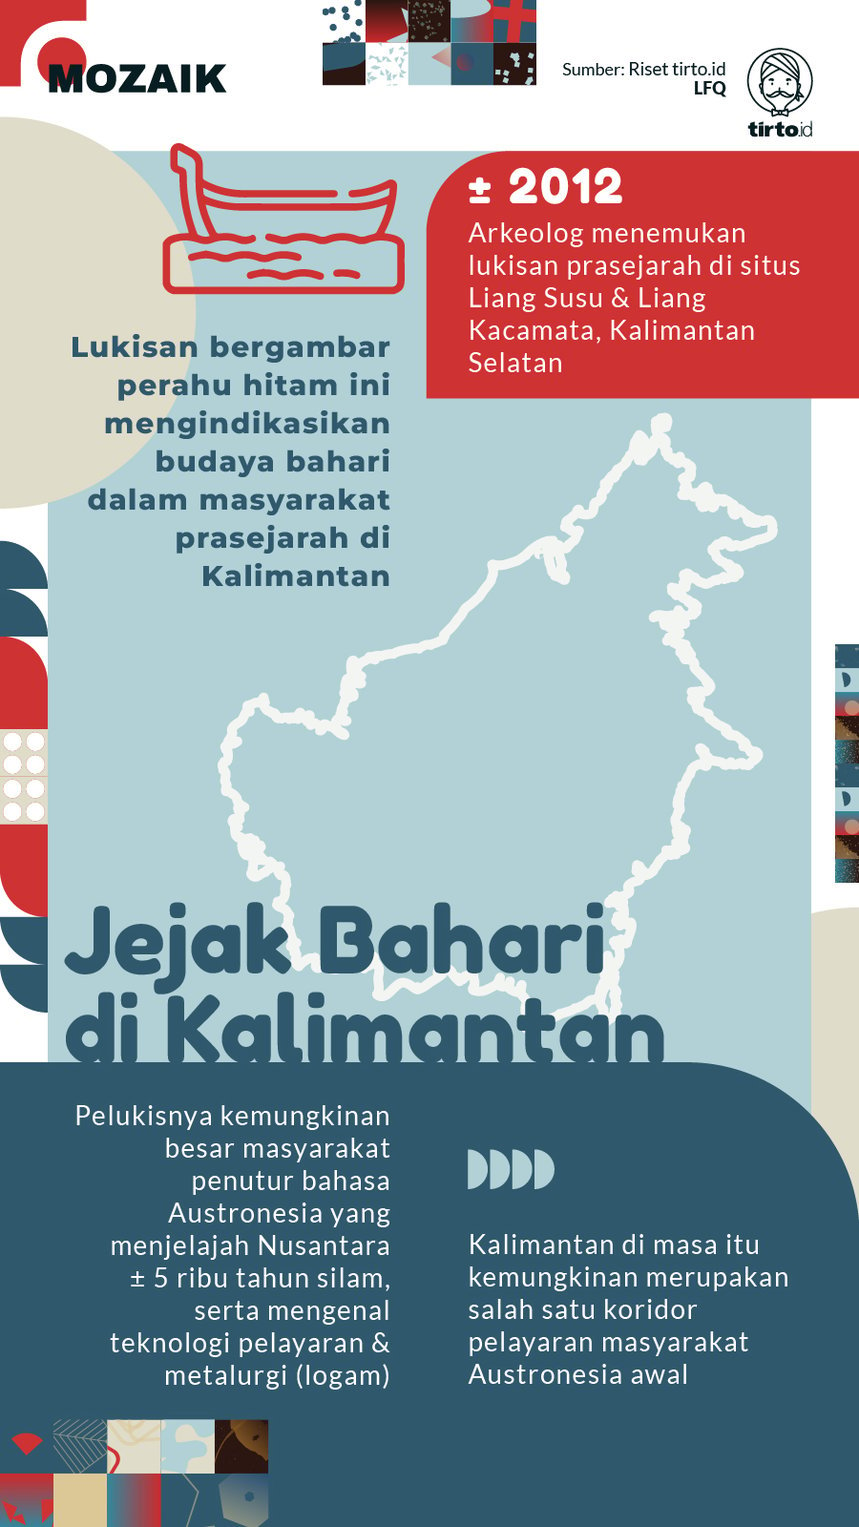 Infografik Mozaik Jejak Bahari di Kalimantan